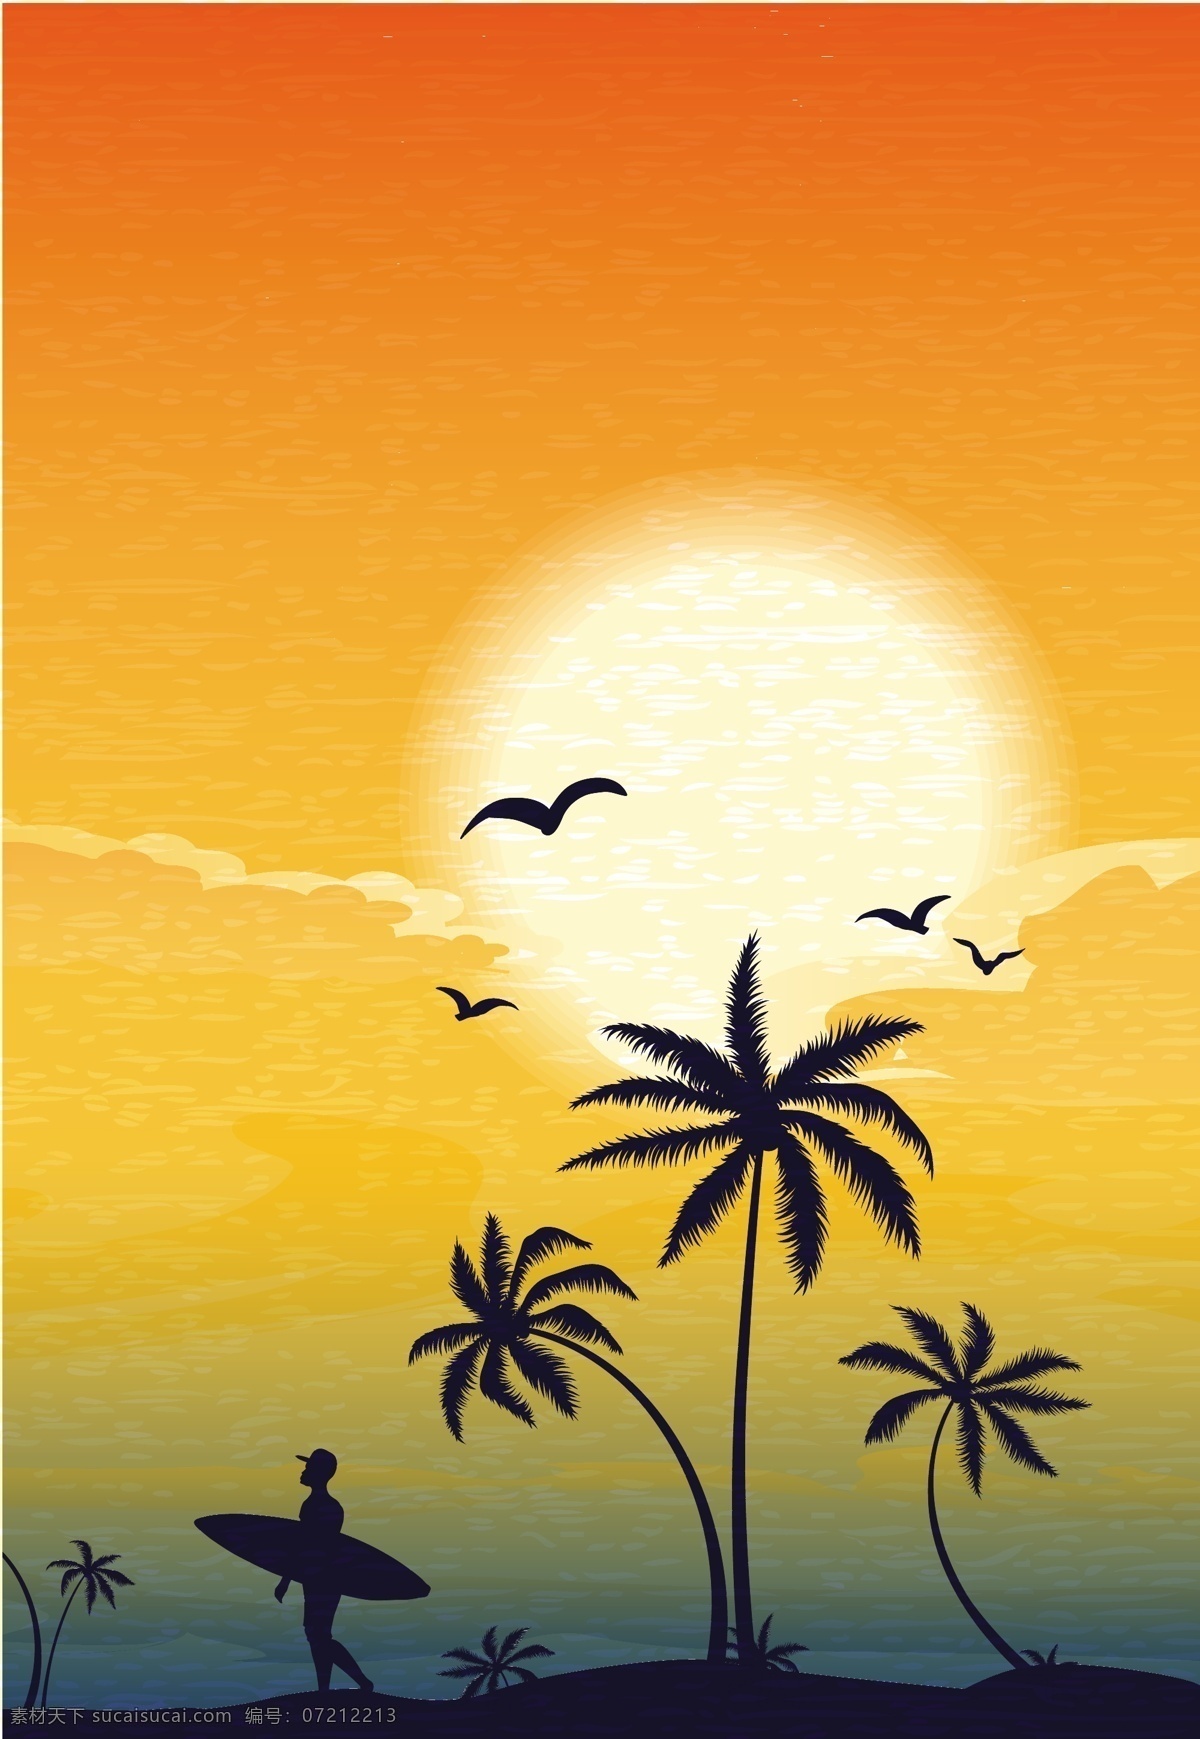 冲浪 人物 椰树 剪影 冲浪人物 卡通椰树 沙滩风景 椰树插画 夏日背景 夏季背景 底纹边框 矢量素材 橙色